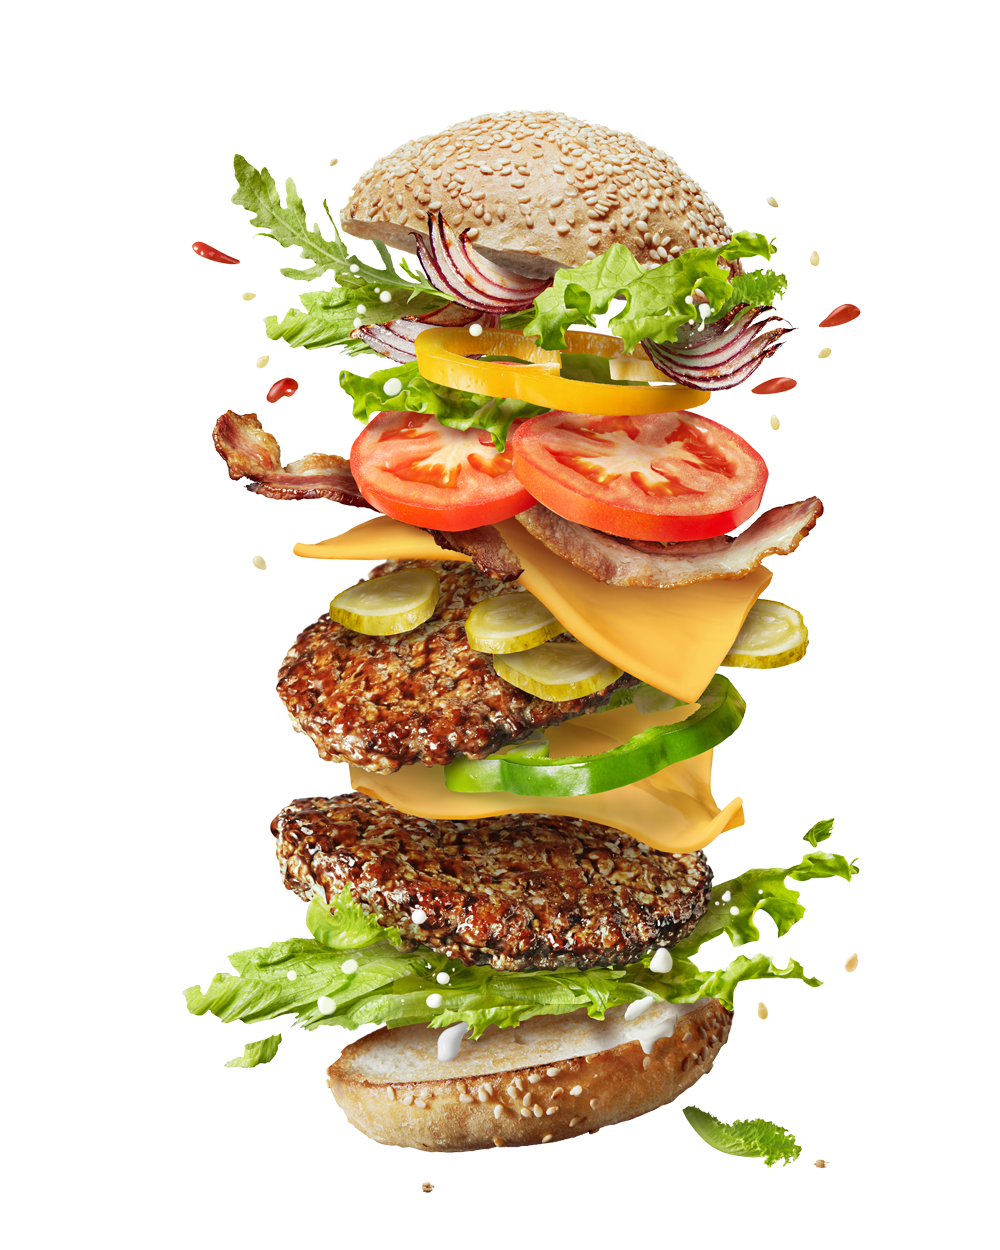 favpng_hamburger-cheeseburger-french-fries-veggie-burger-ingredient